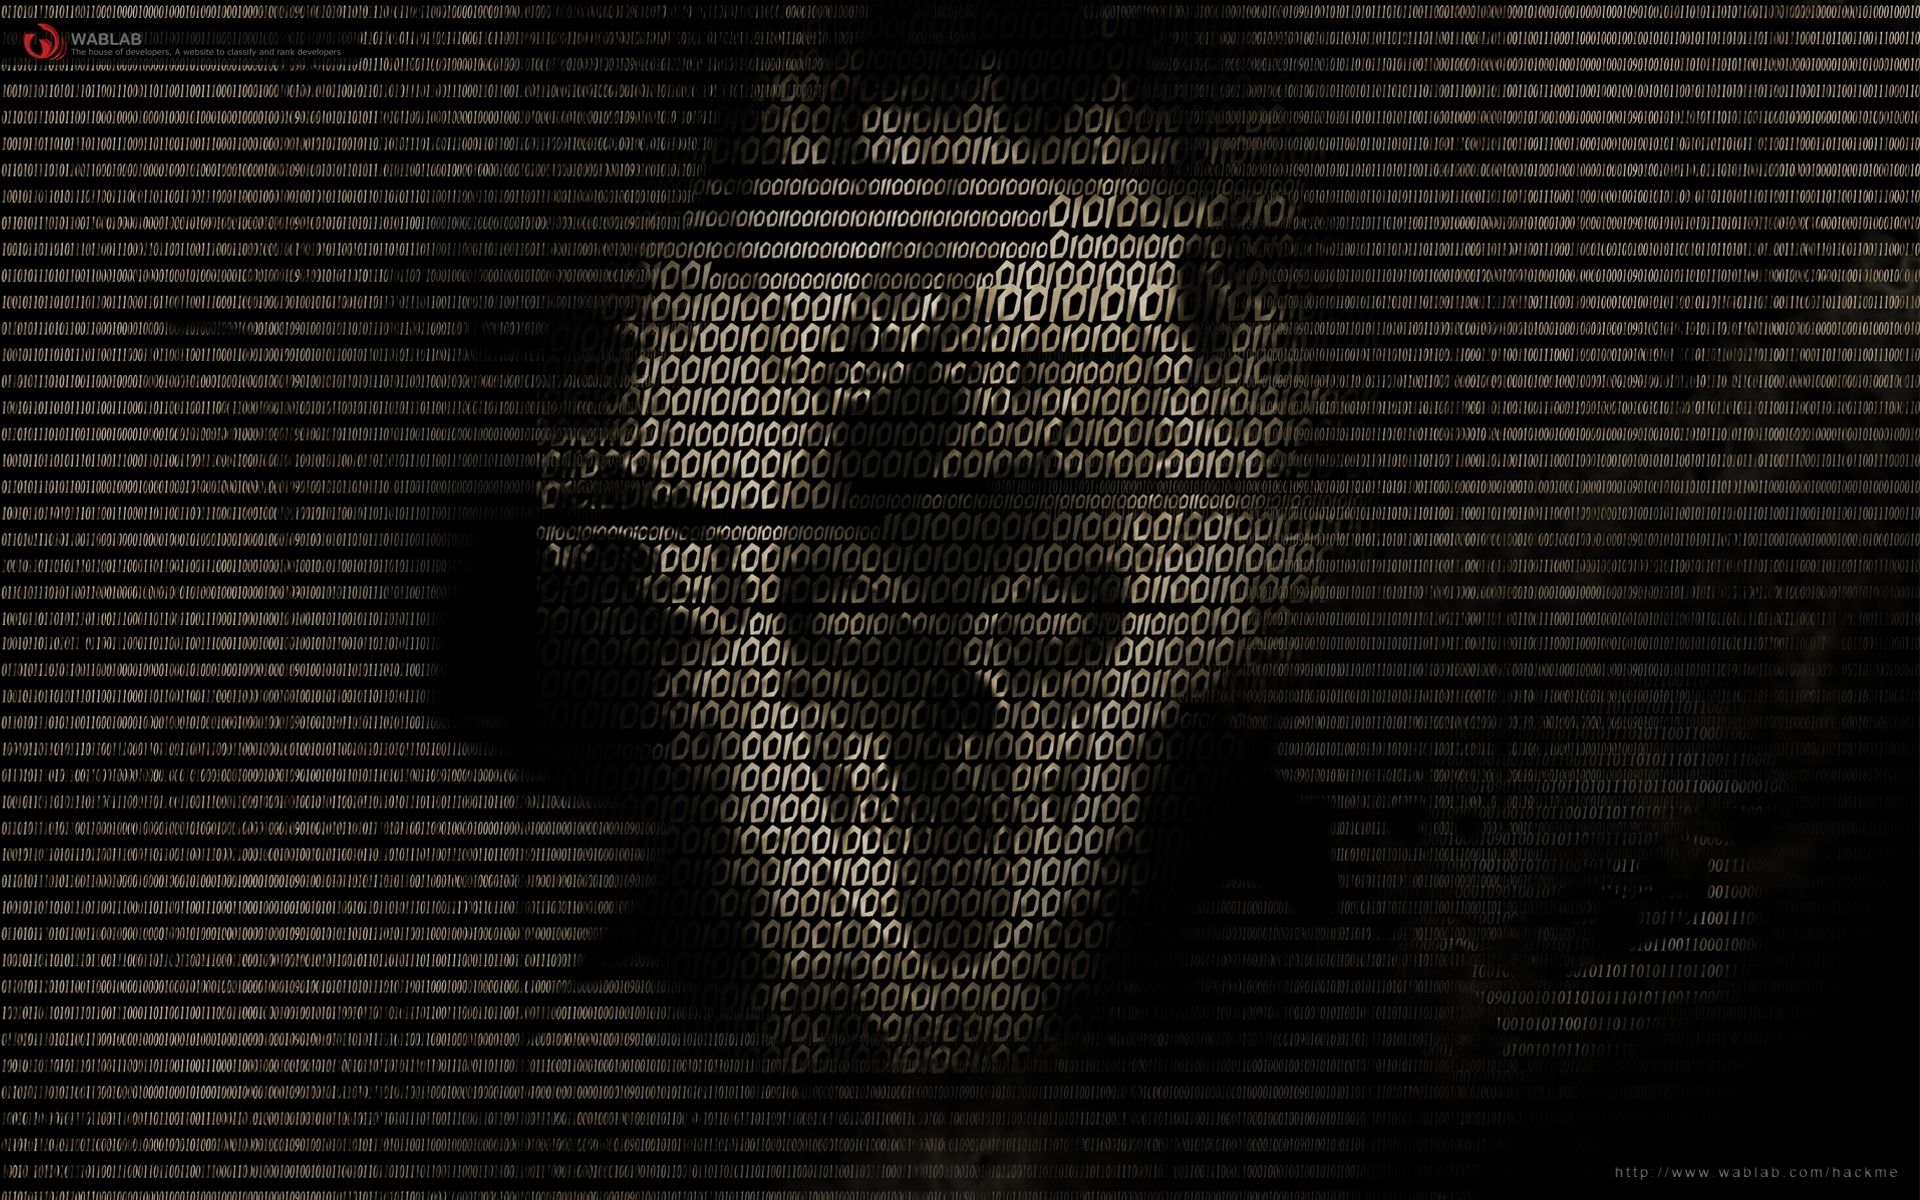 hacker hd wallpaper for pc